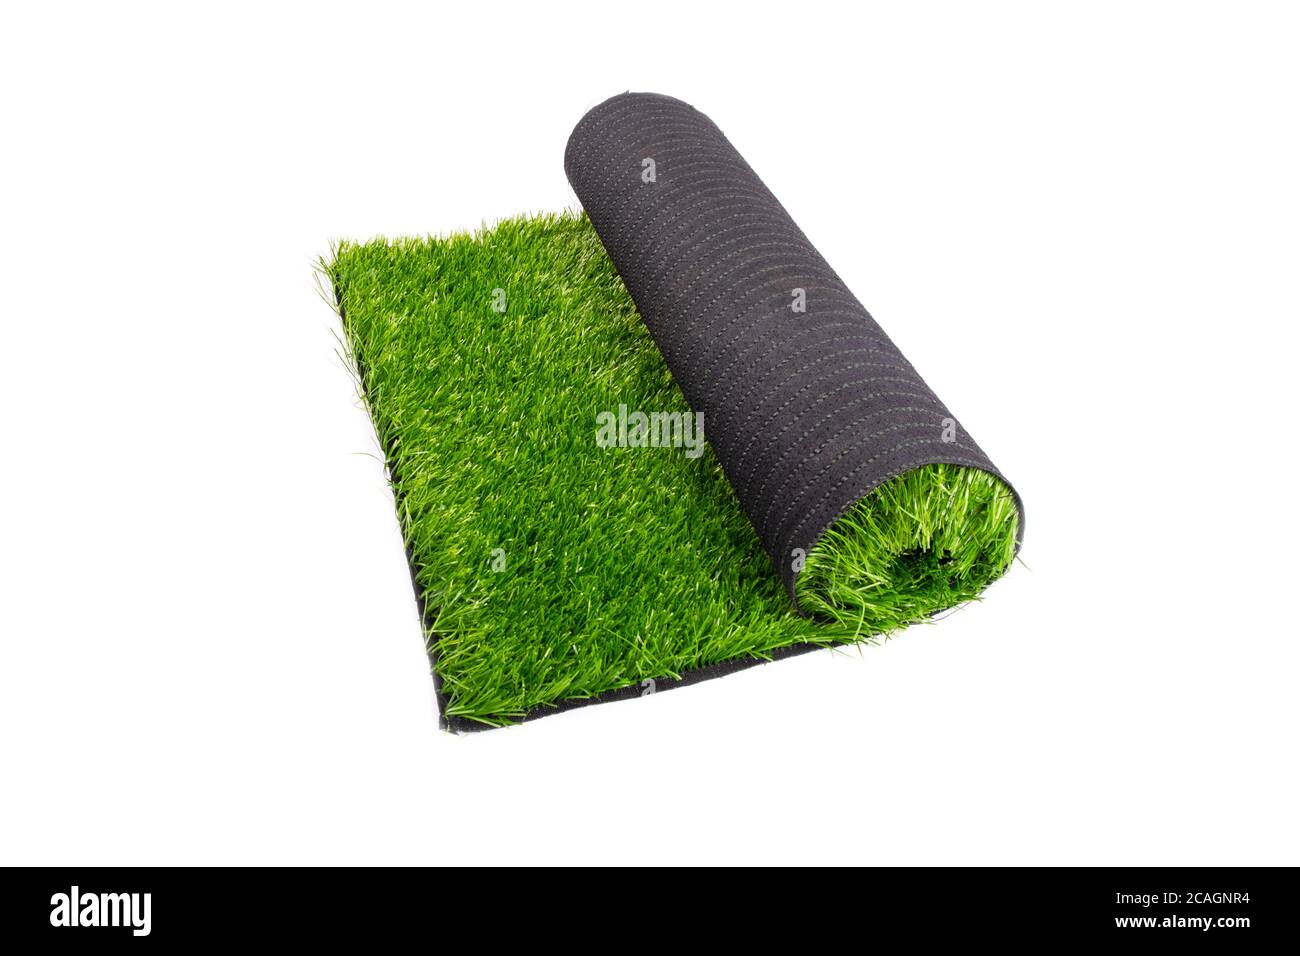 gazon artificiel, revêtement, rouleau d'herbe verte artificielle isolé sur fond blanc. Banque D'Images